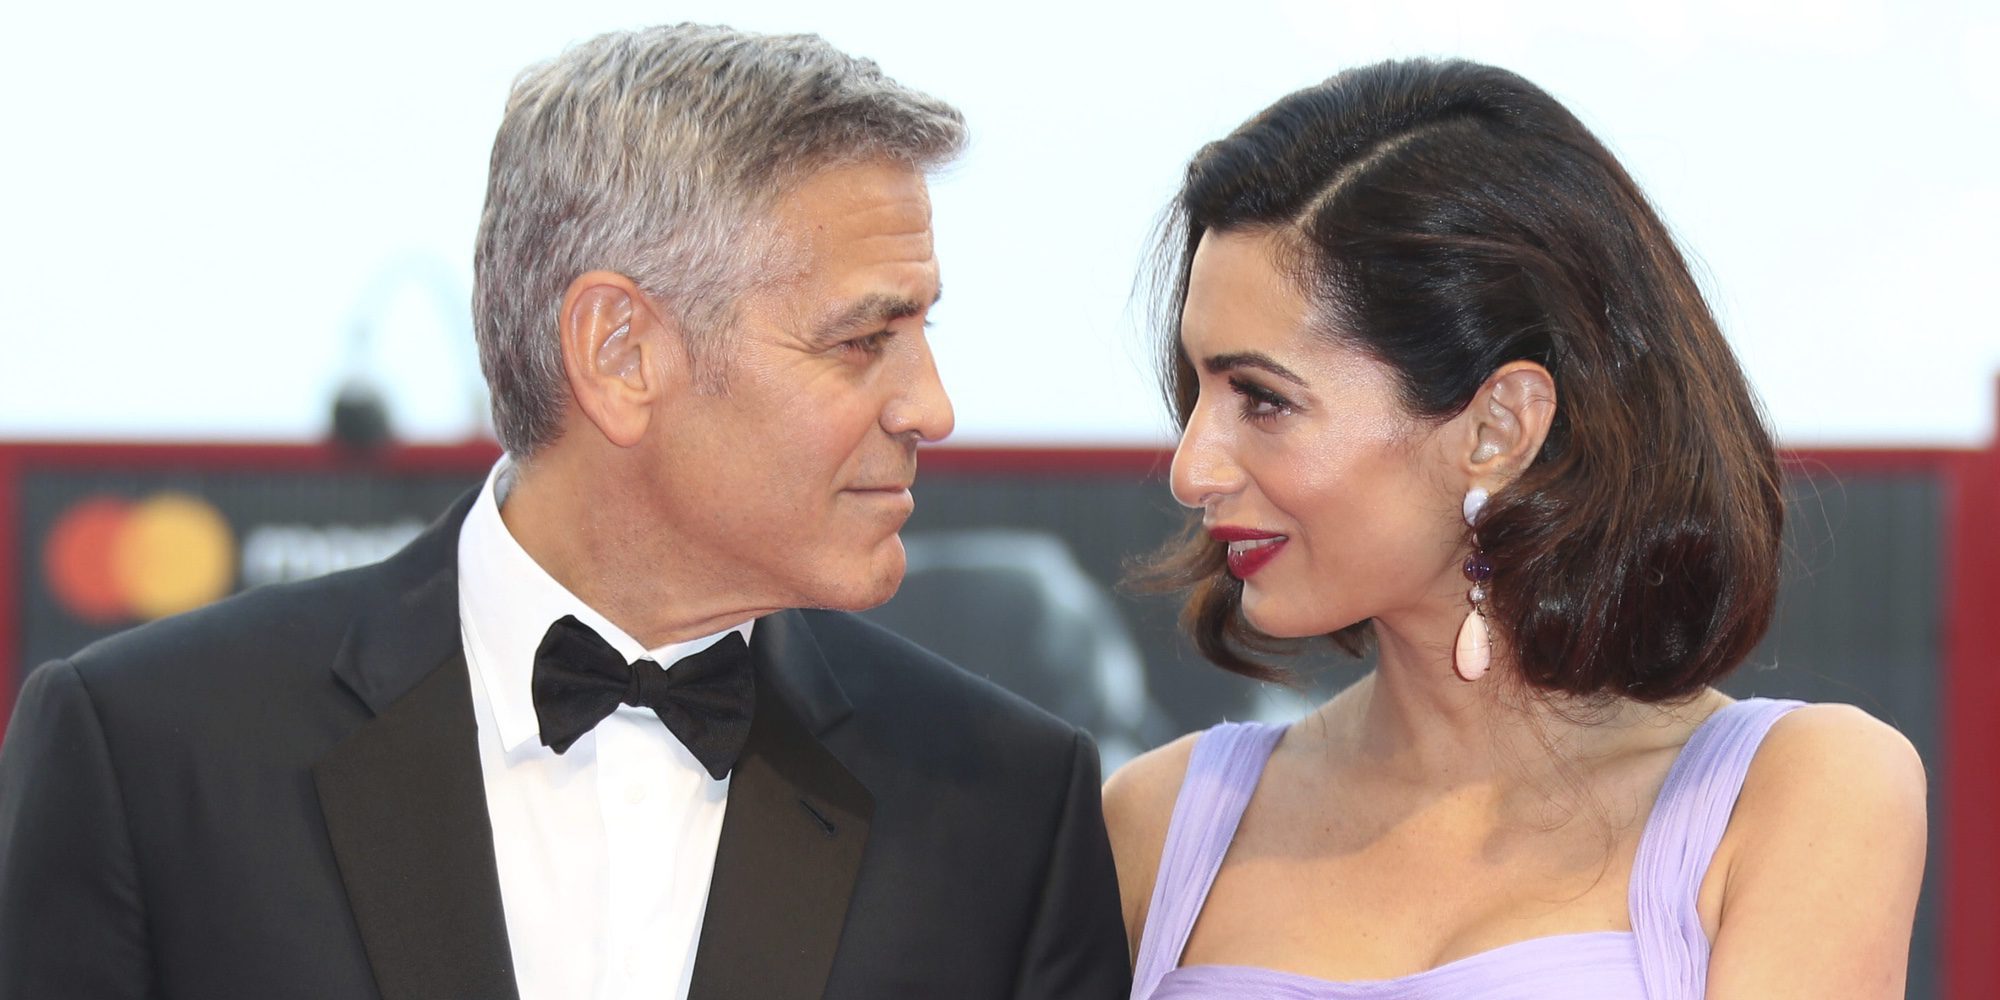 George Clooney cuenta cómo conoció a Amal Alamuddin sin tener que salir de casa